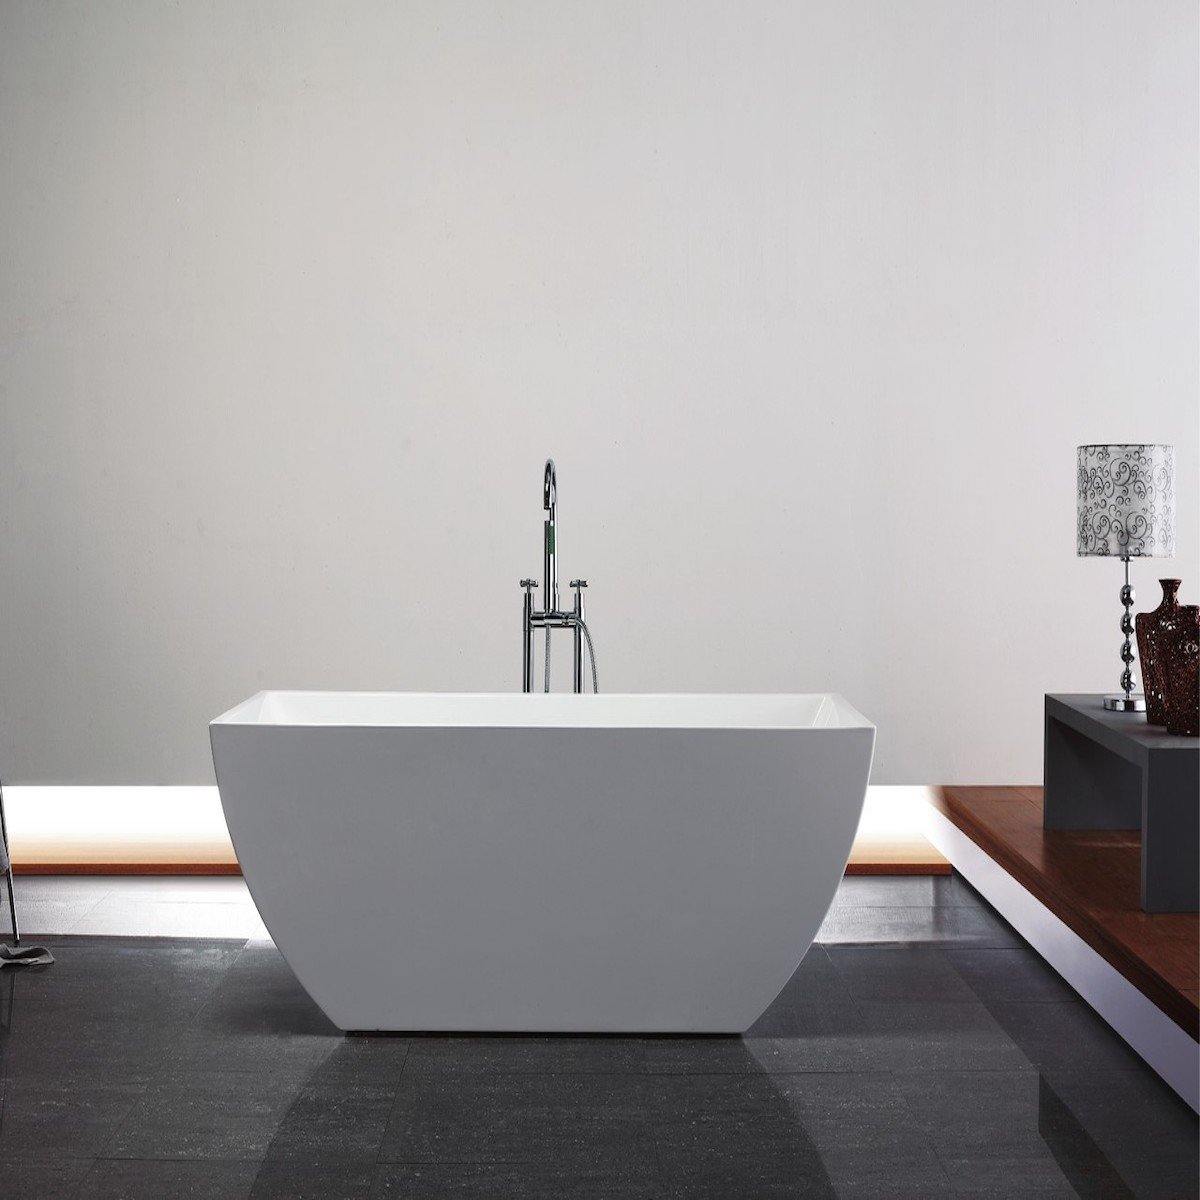 KubeBath Contemporanea 67 Inch White Freestanding Bathtub KFST2167 #size_67 inch